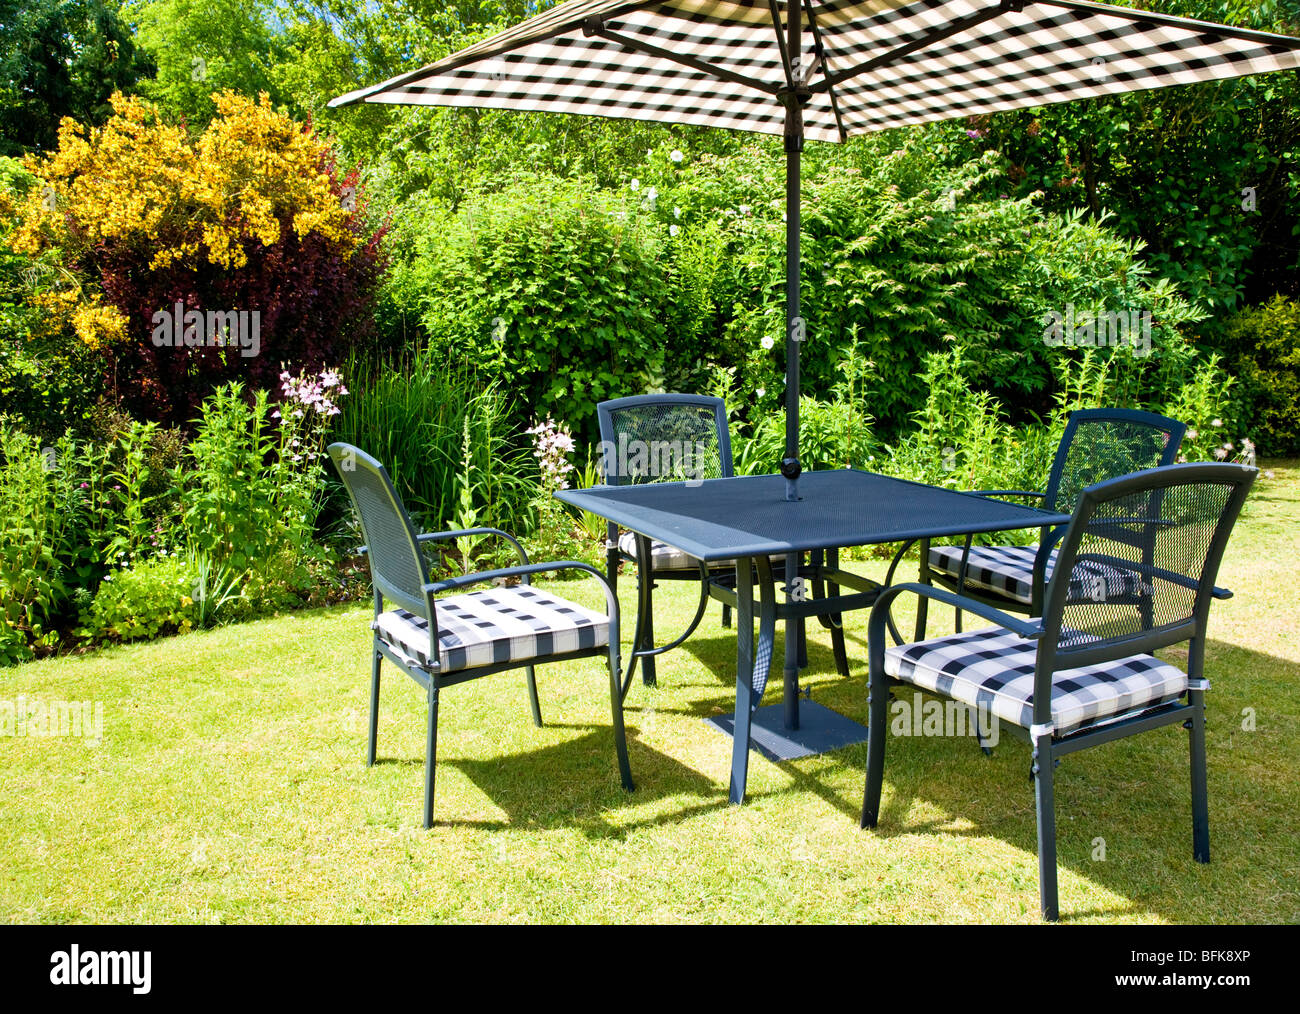 Moderne Gartenmöbel, begib dich auf eine Wiese in einem typisch englischen Land oder s Garten an einem sonnigen Tag im Sommer Stockfoto